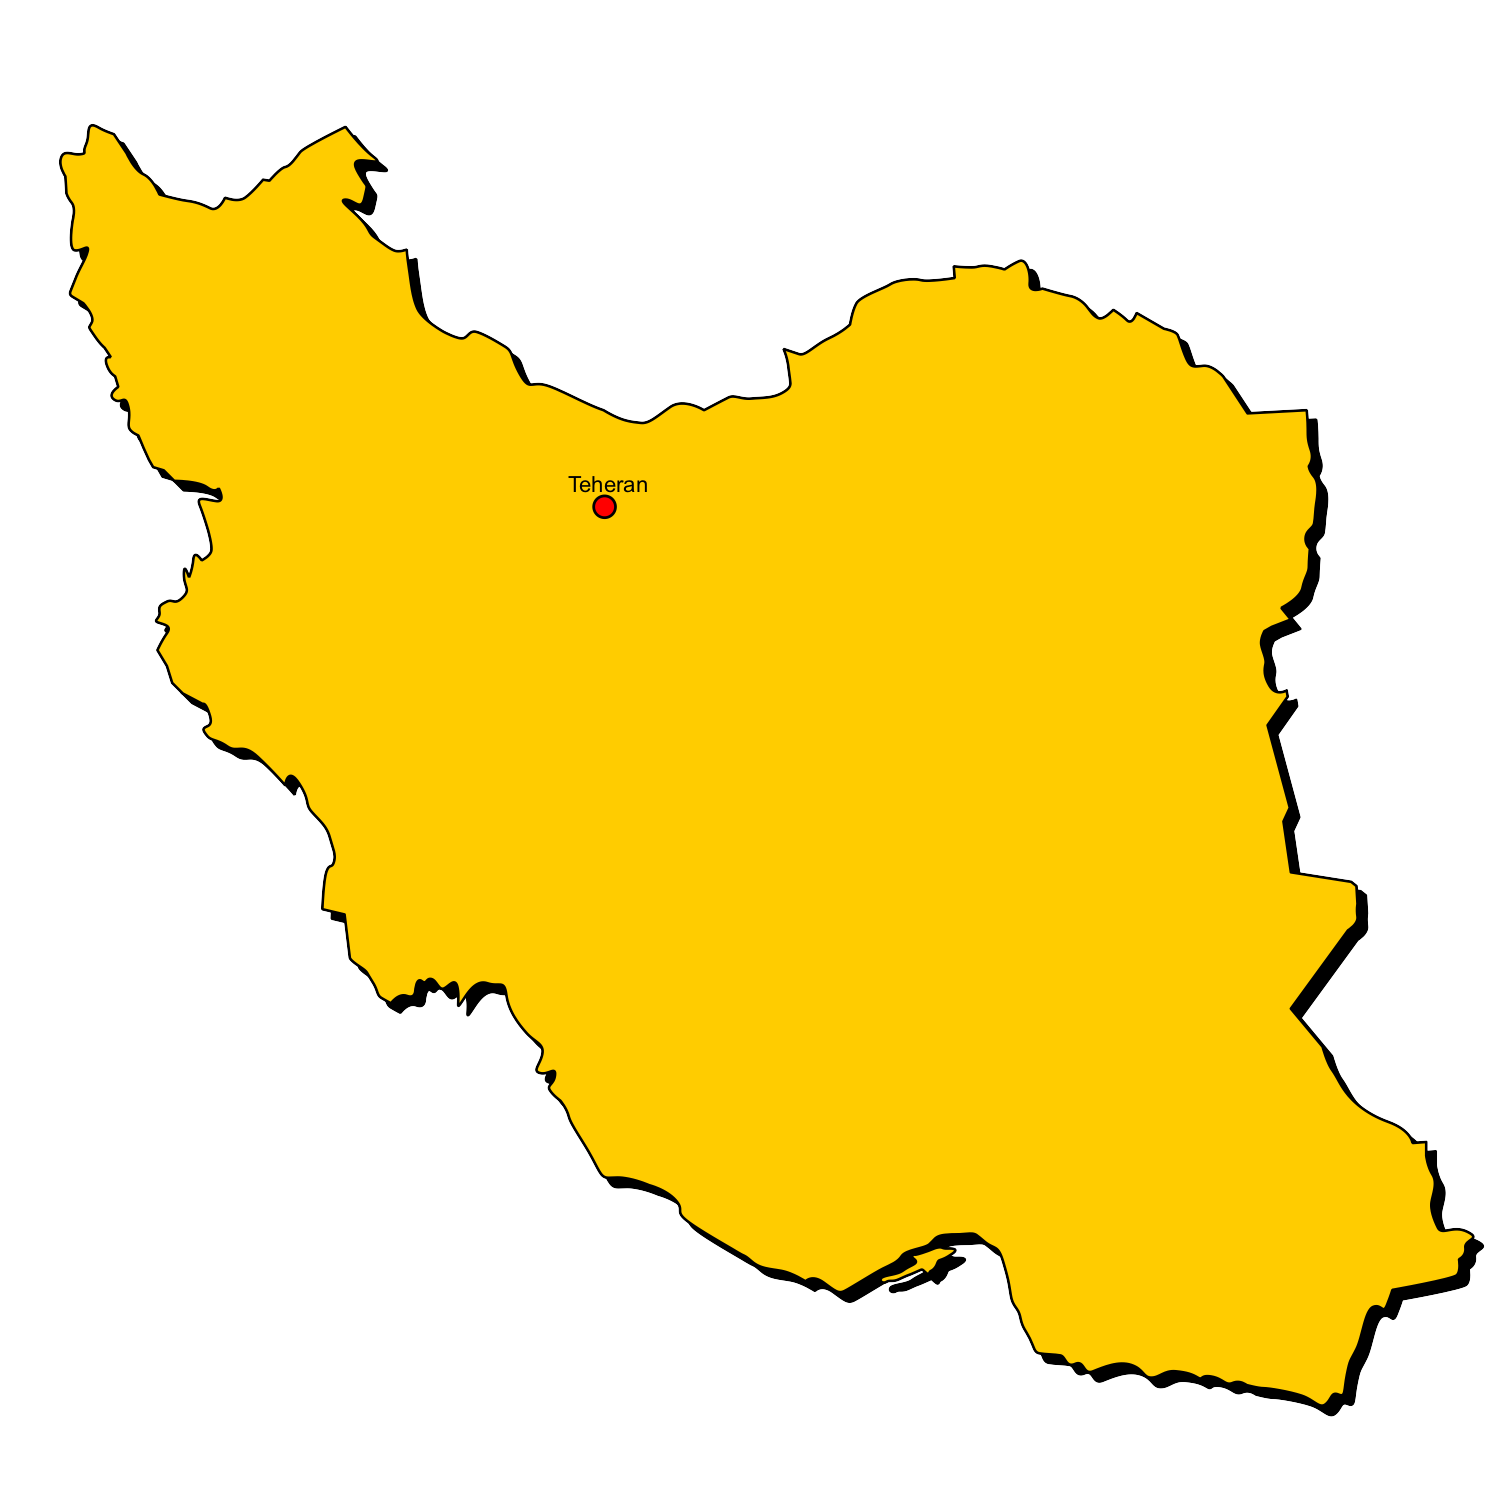 فایل خام HD از نقشه زرد رنگ ایران با مرکزیت شهر تهران